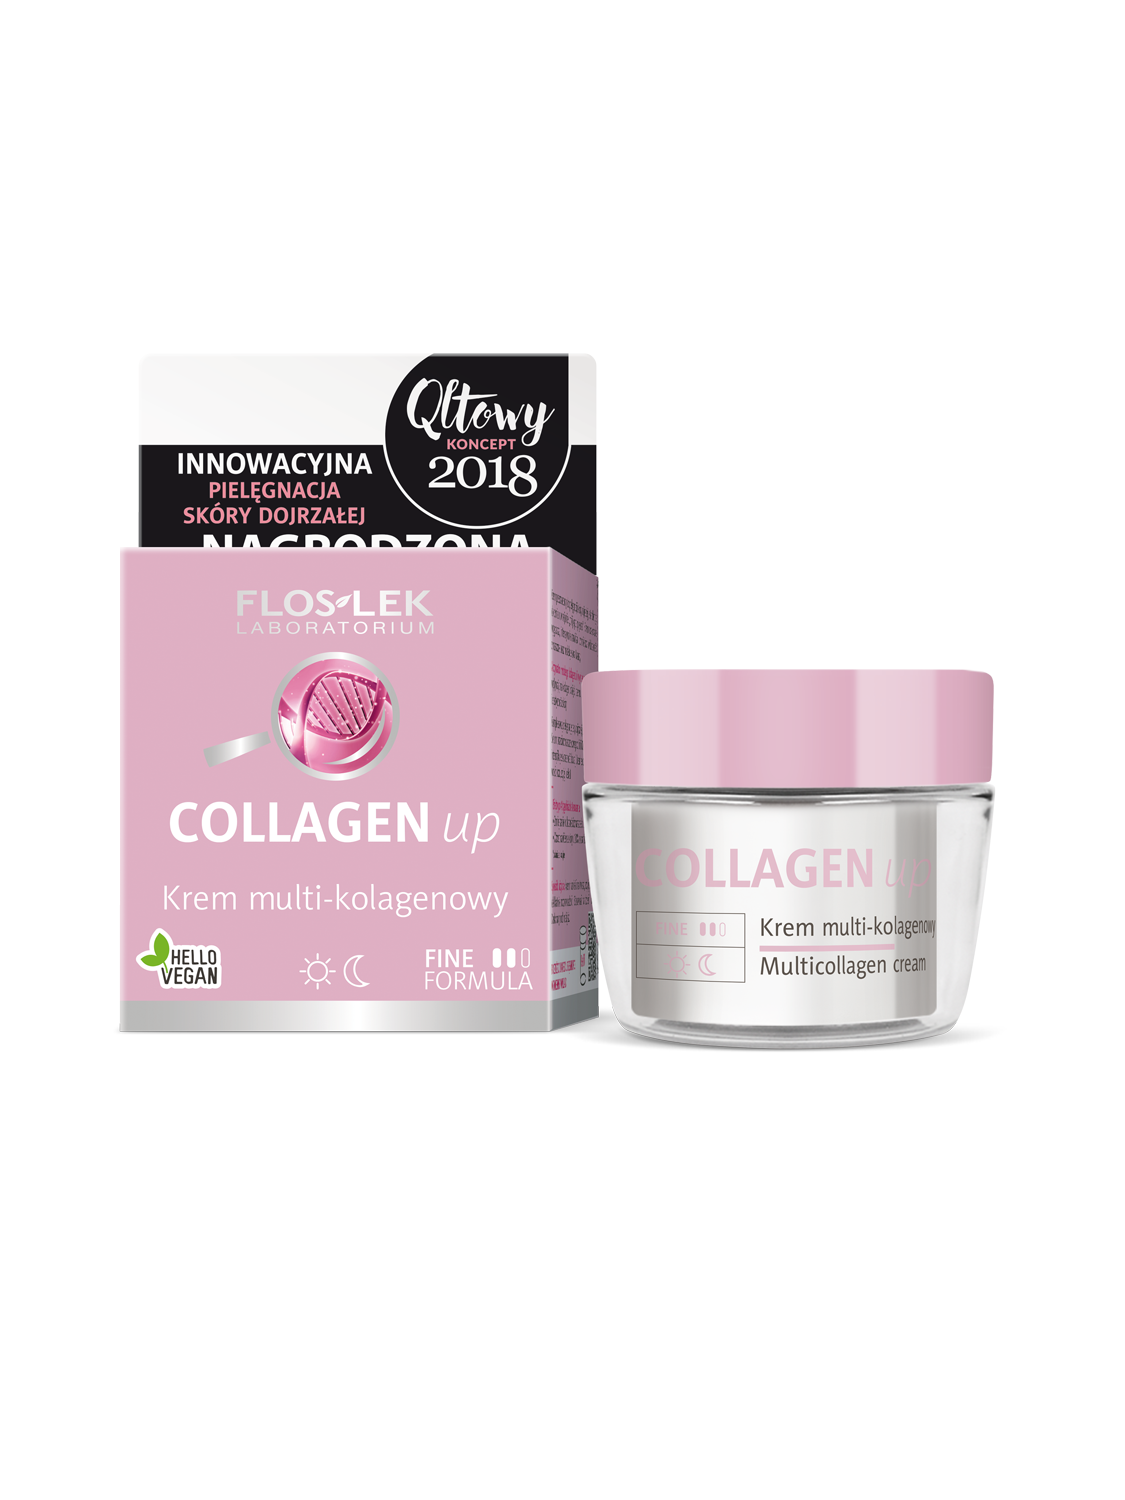 COLLAGEN up® Multicollagen cream - 50 ml - Floslek